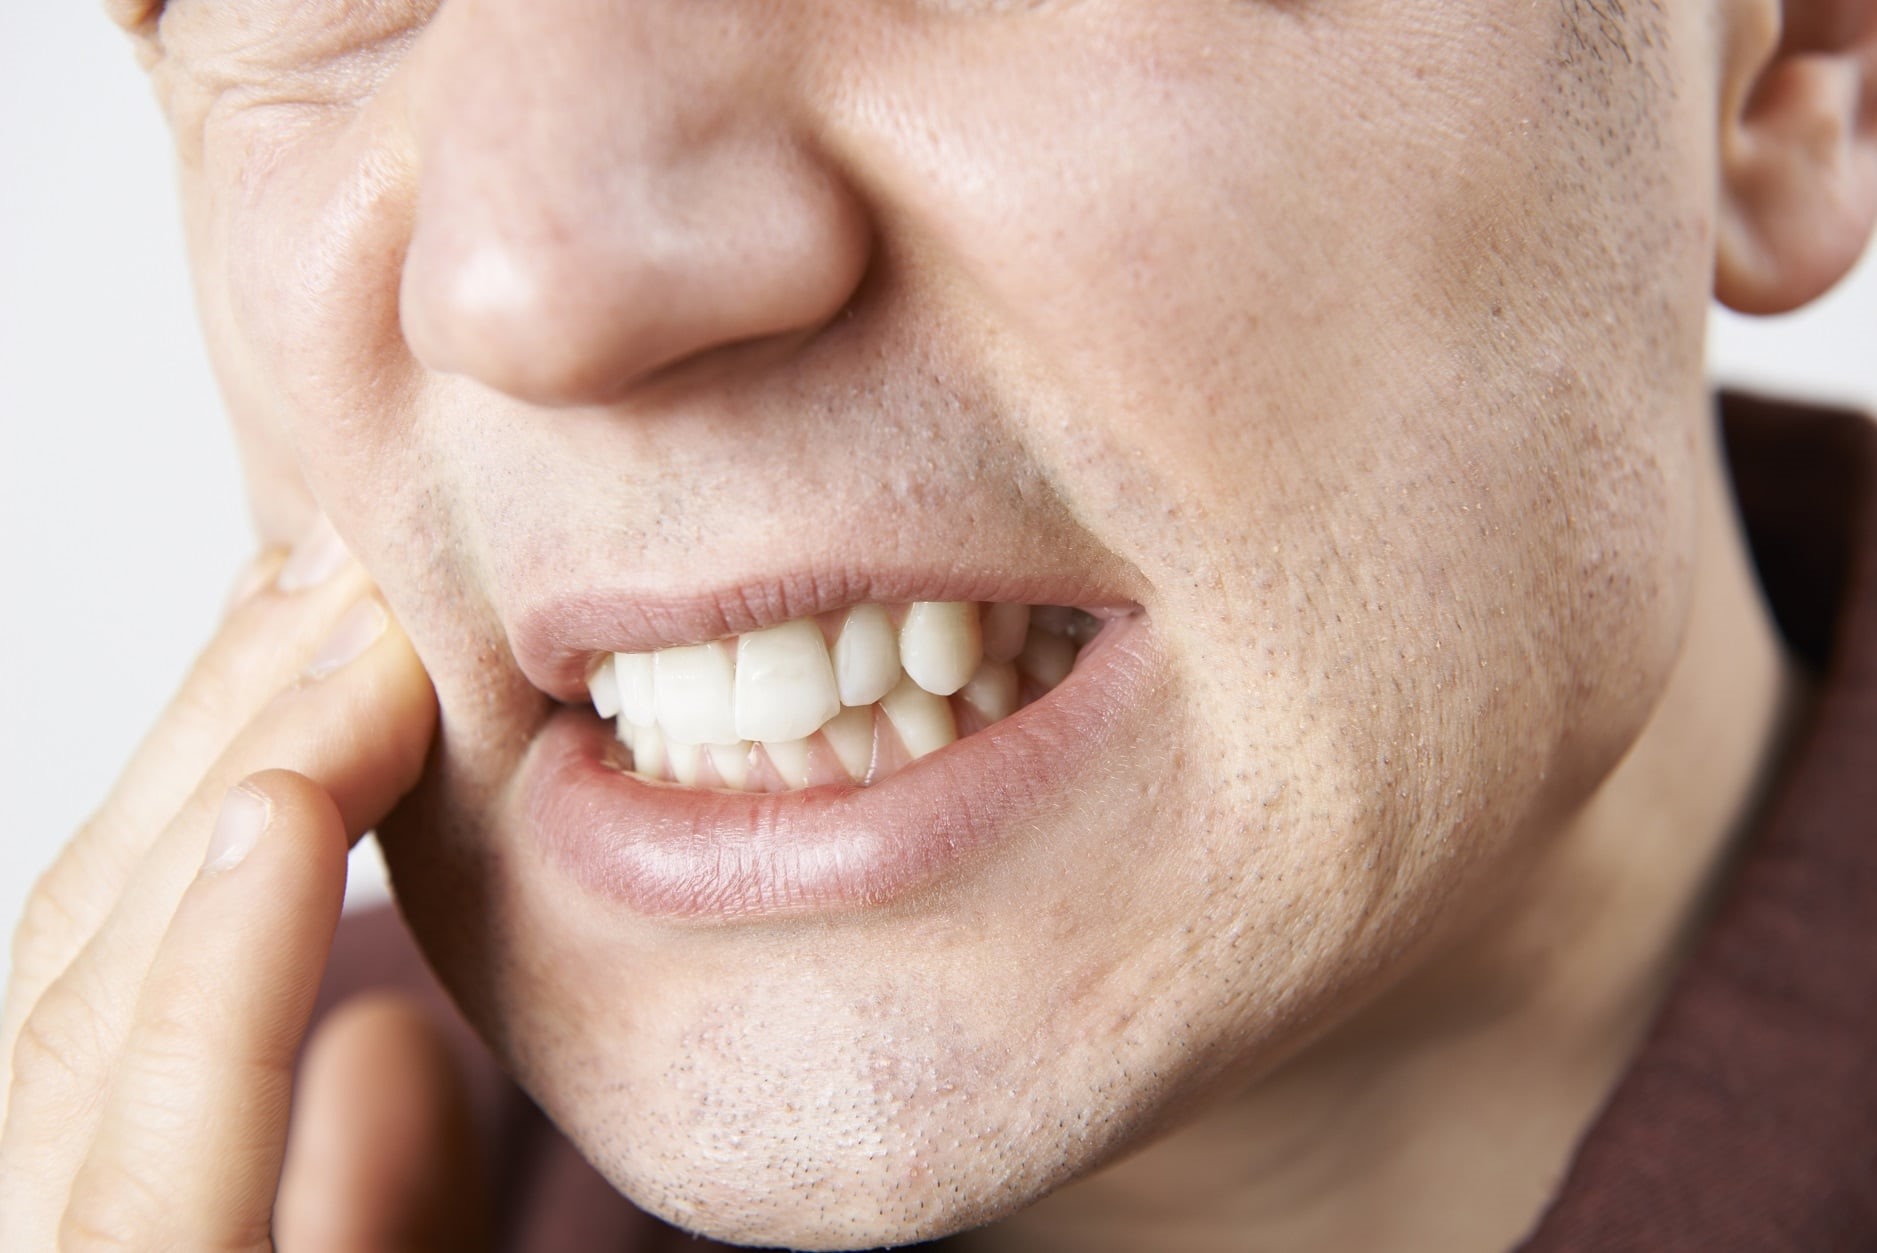 درمان دندان قروچه با ارتودنسی